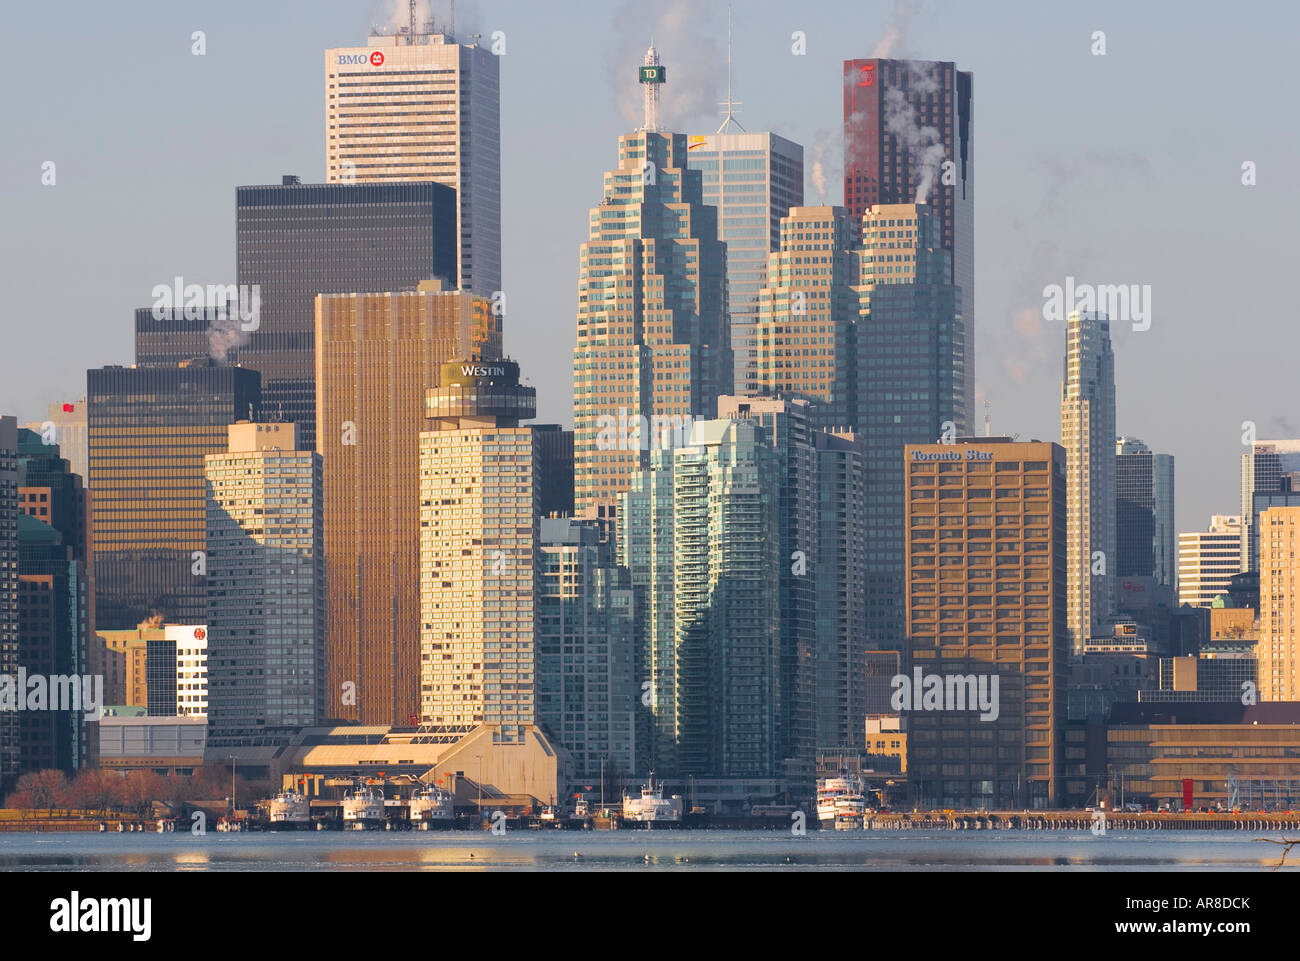 El centro de Toronto Skyline - Canadá Foto de stock